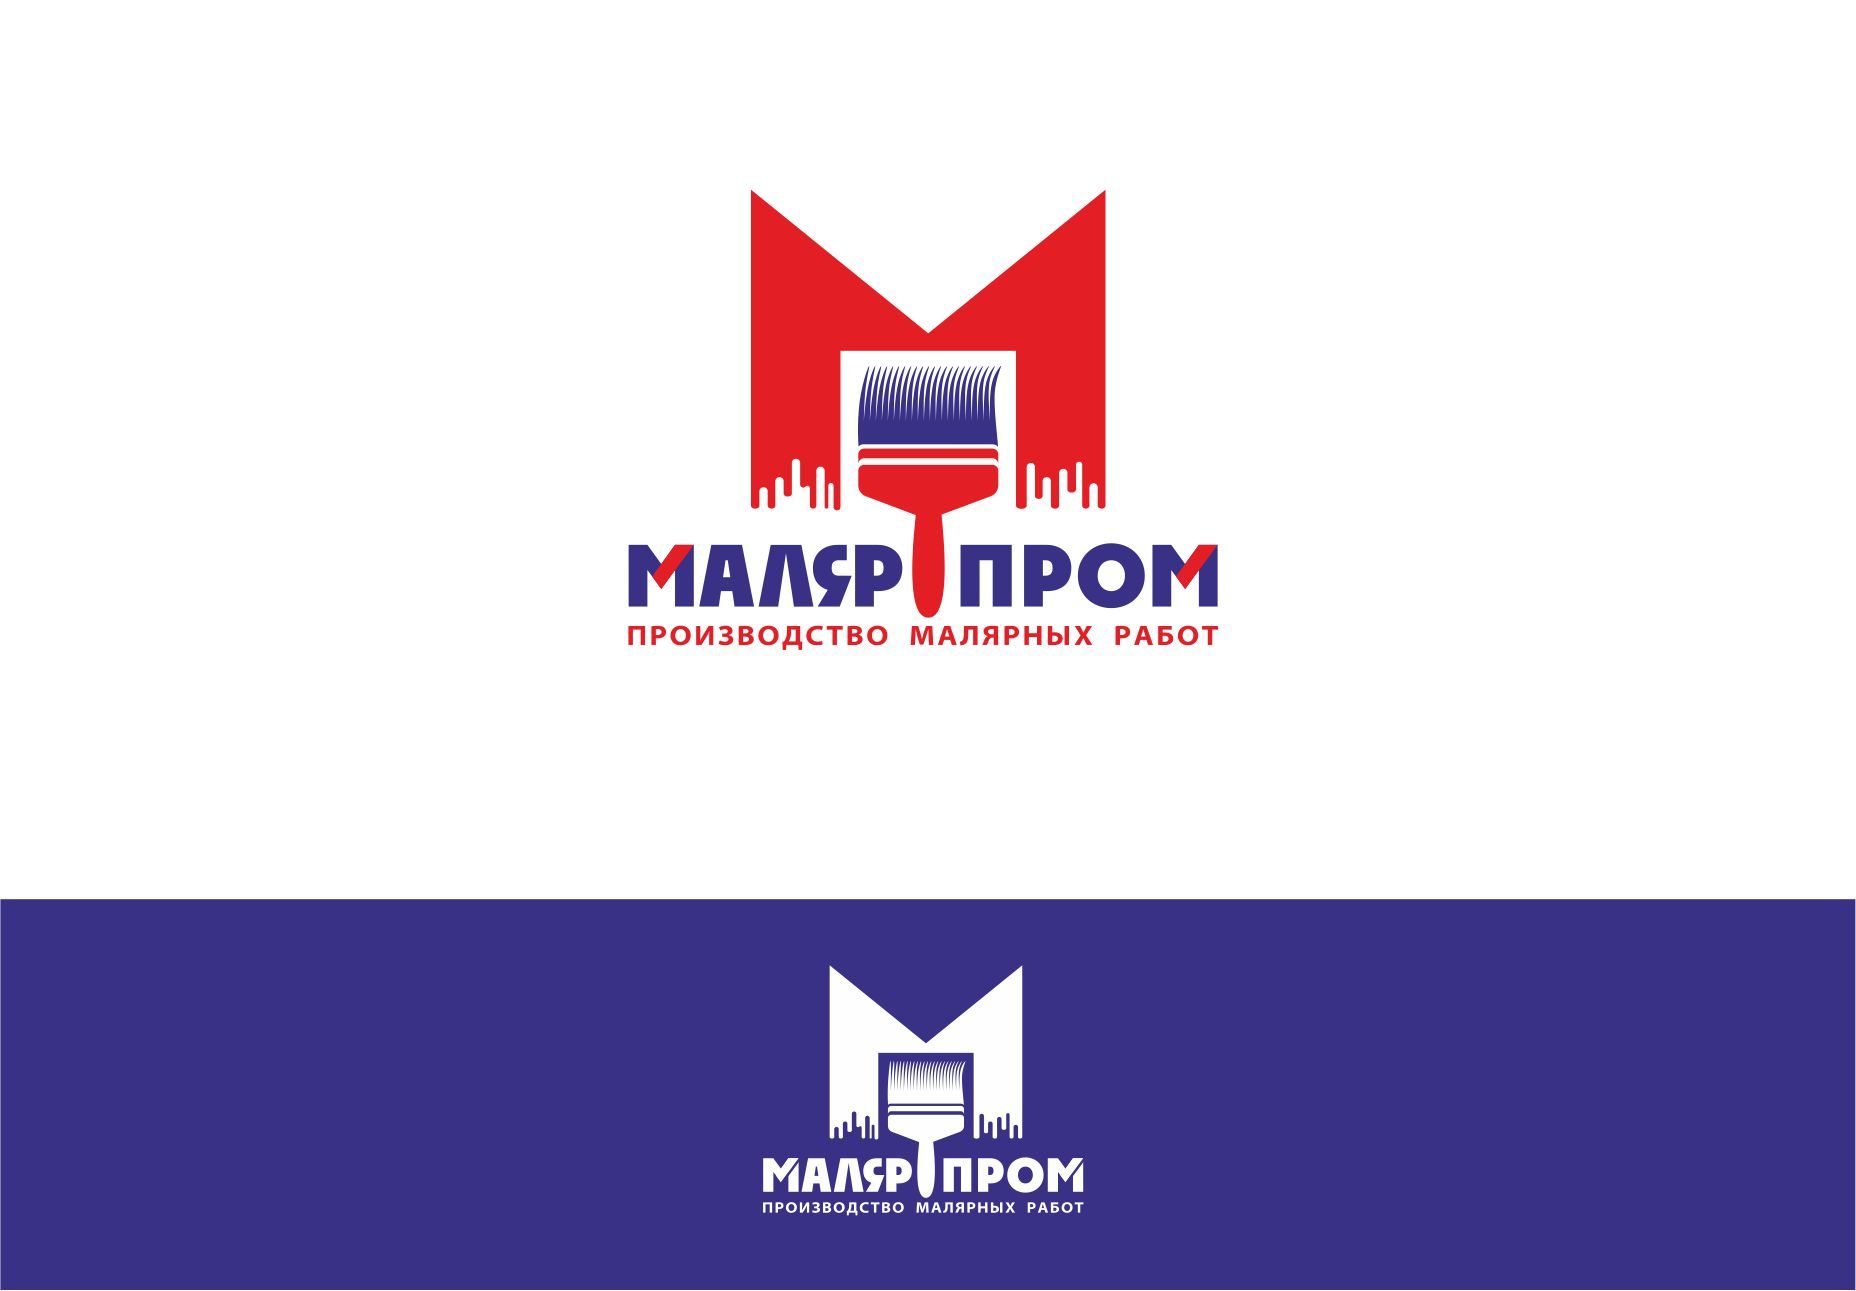 Лого и фирменный стиль для Малярпром - дизайнер PAPANIN